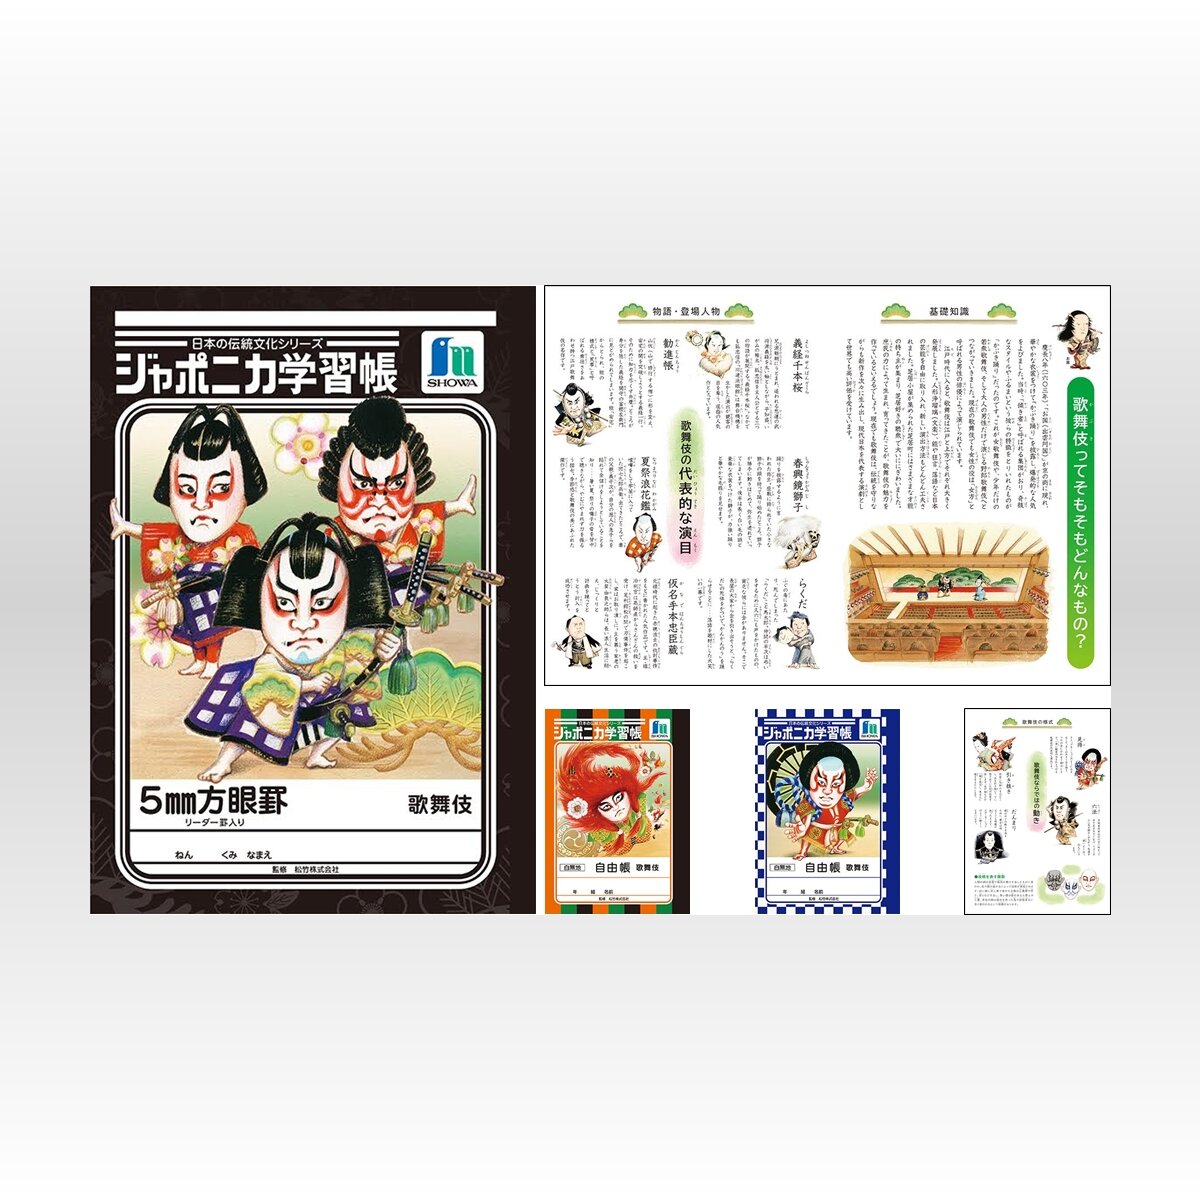 歌舞伎テーマのジャポニカ学習帳が登場 37年ぶりの自然以外のテーマ 日本の伝統文化シリーズ 15年9月24日 Biglobeニュース